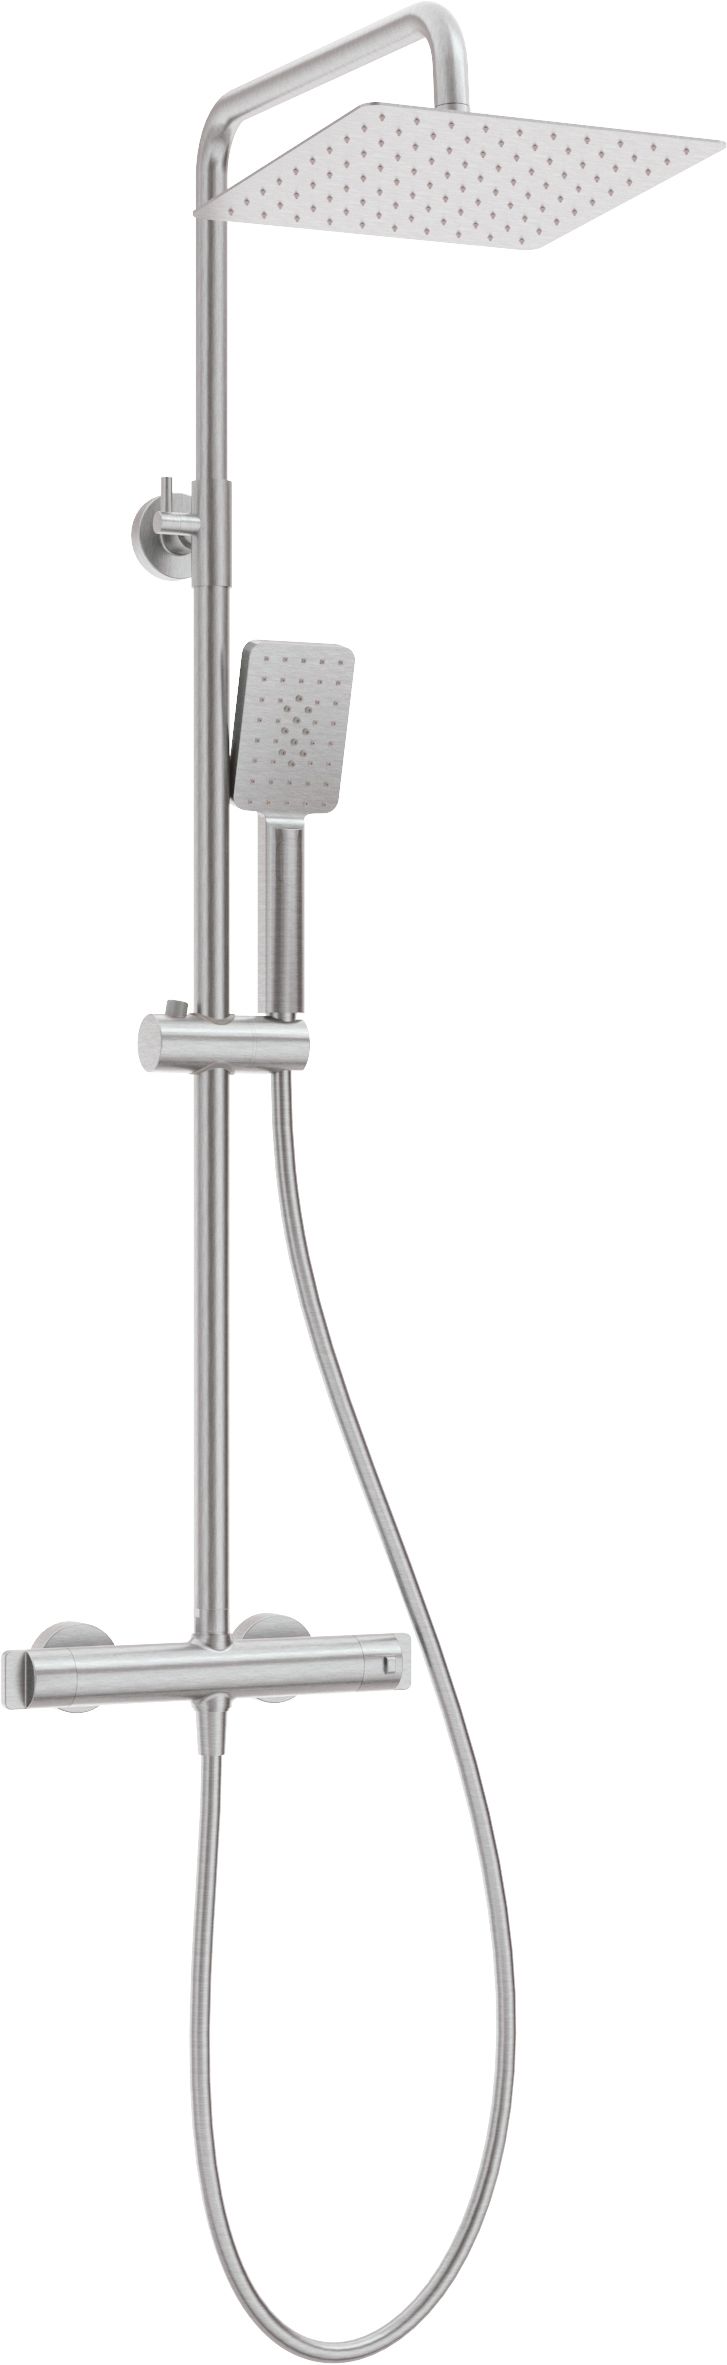 Deszczownica z baterią prysznicową termostatyczną - NAC_F4HT - Główne zdjęcie produktowe